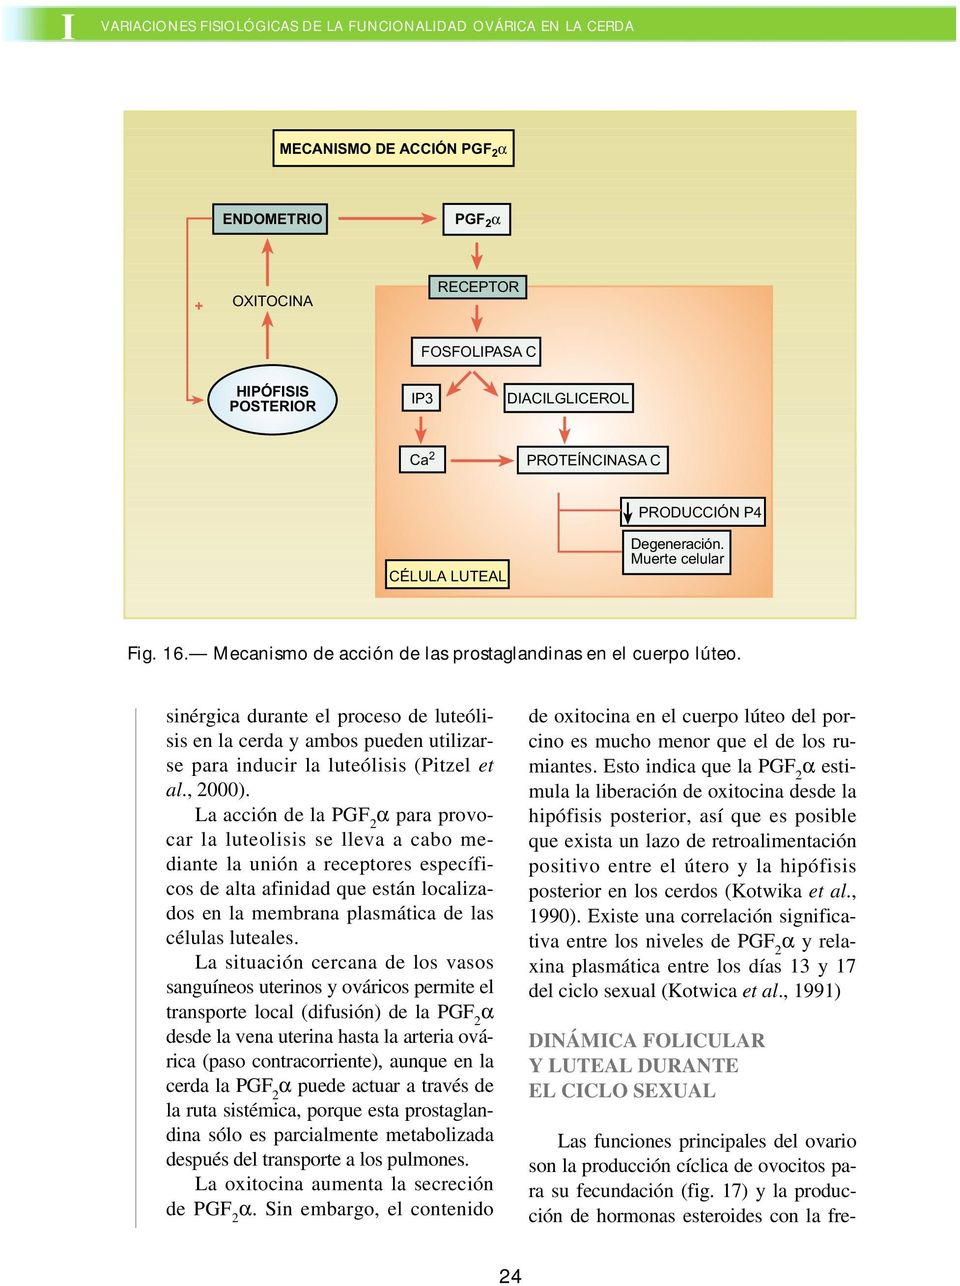 sinérgica durante el proceso de luteólisis en la cerda y ambos pueden utilizarse para inducir la luteólisis (Pitzel et al., 2000).